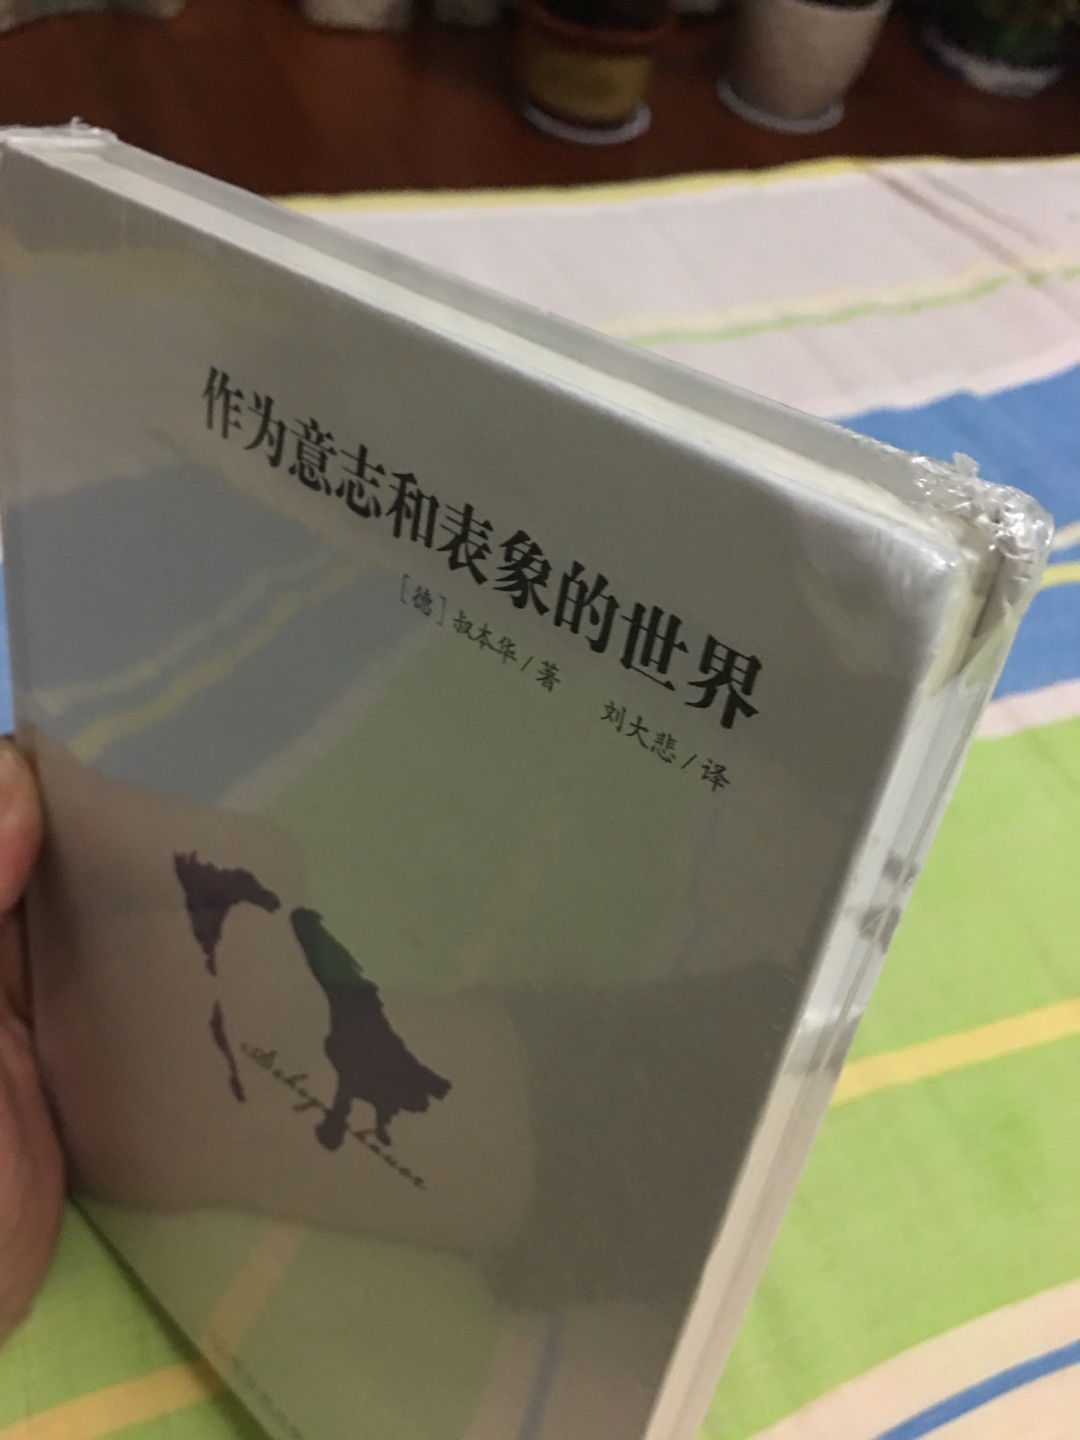 叔本华的代表作，台湾译版很经典。书是正品无疑，美中不足的是边角处有折痕。